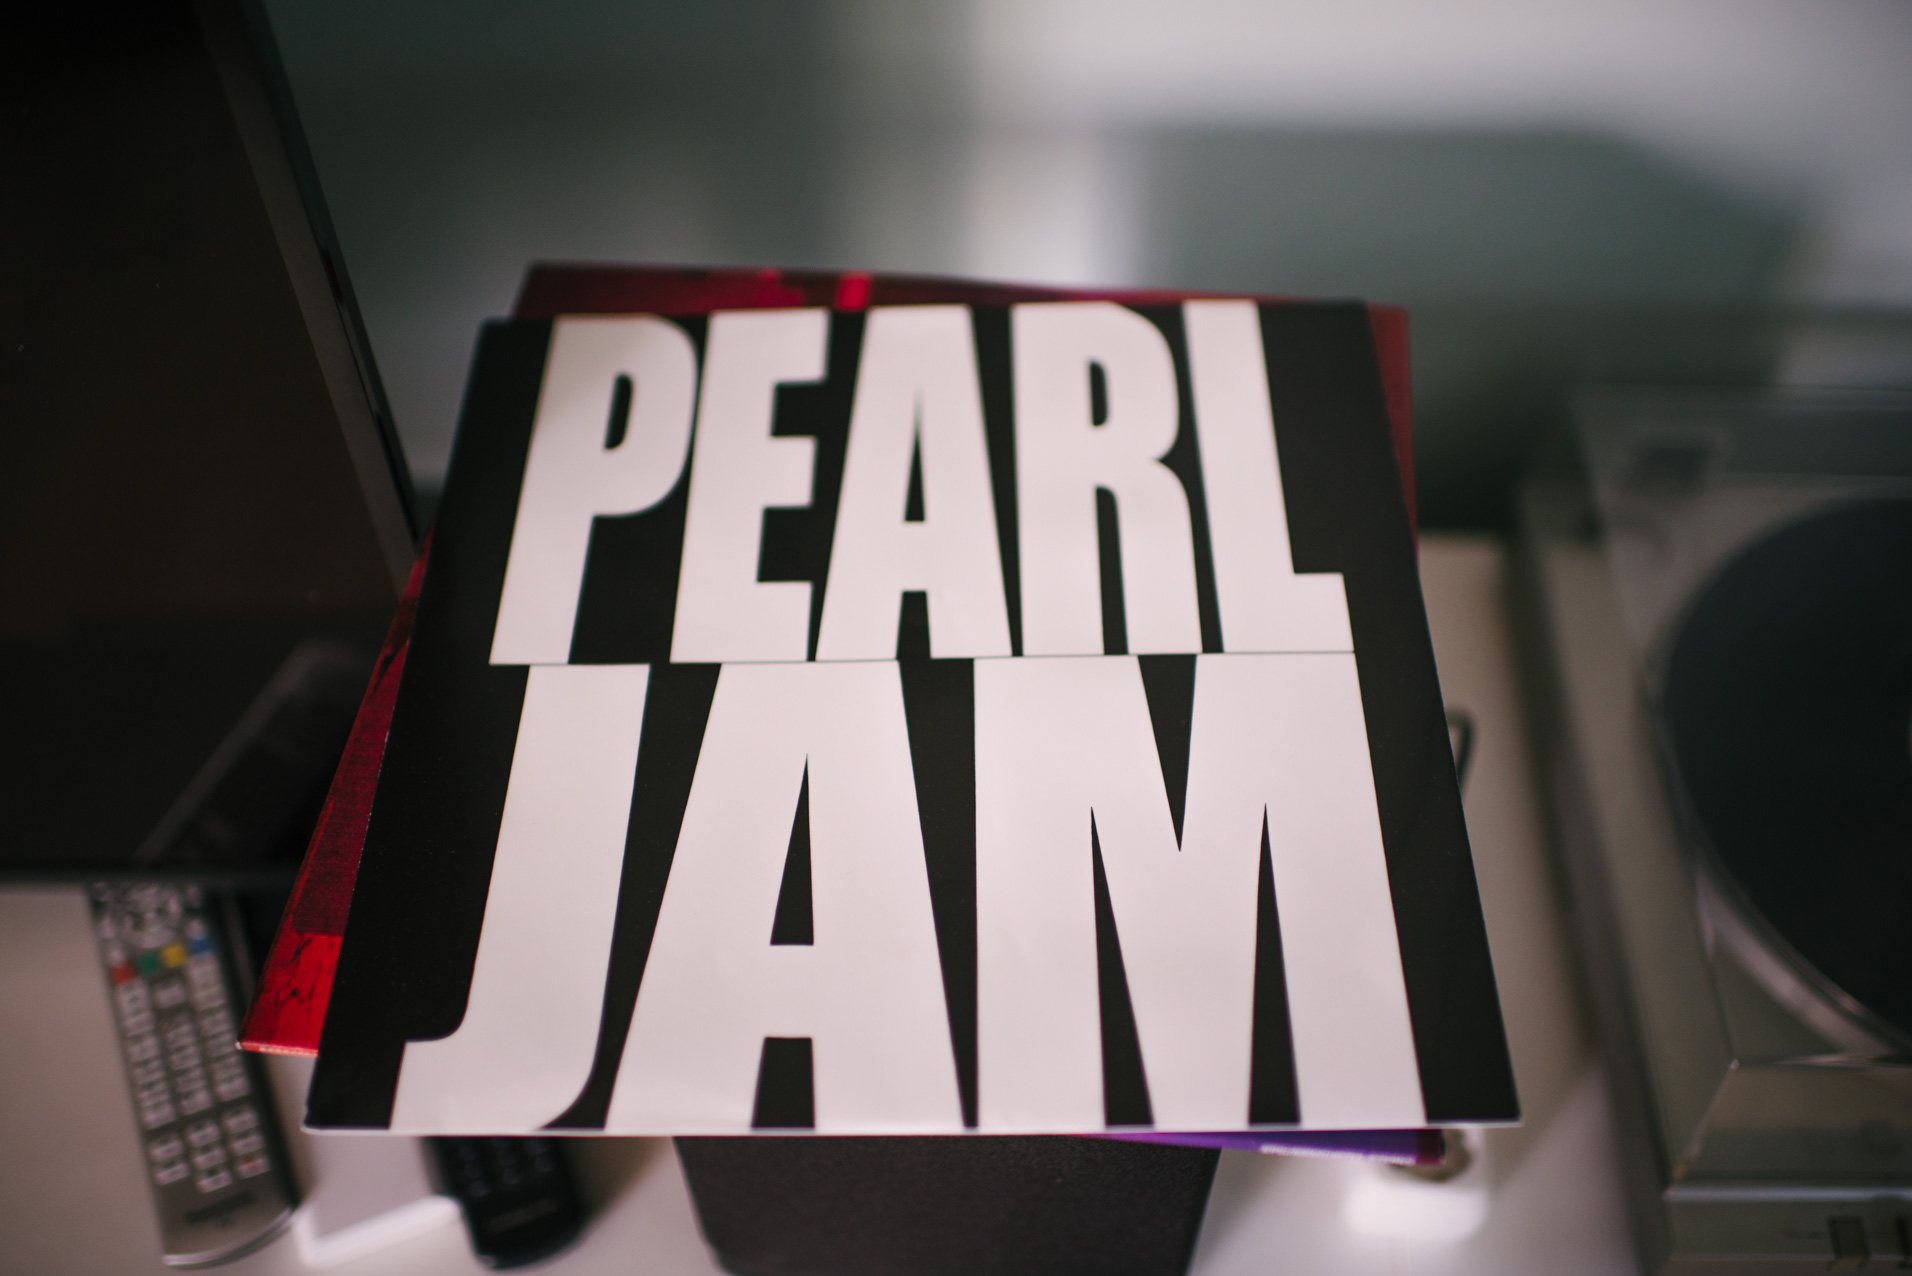 Vinil Pearl Jam